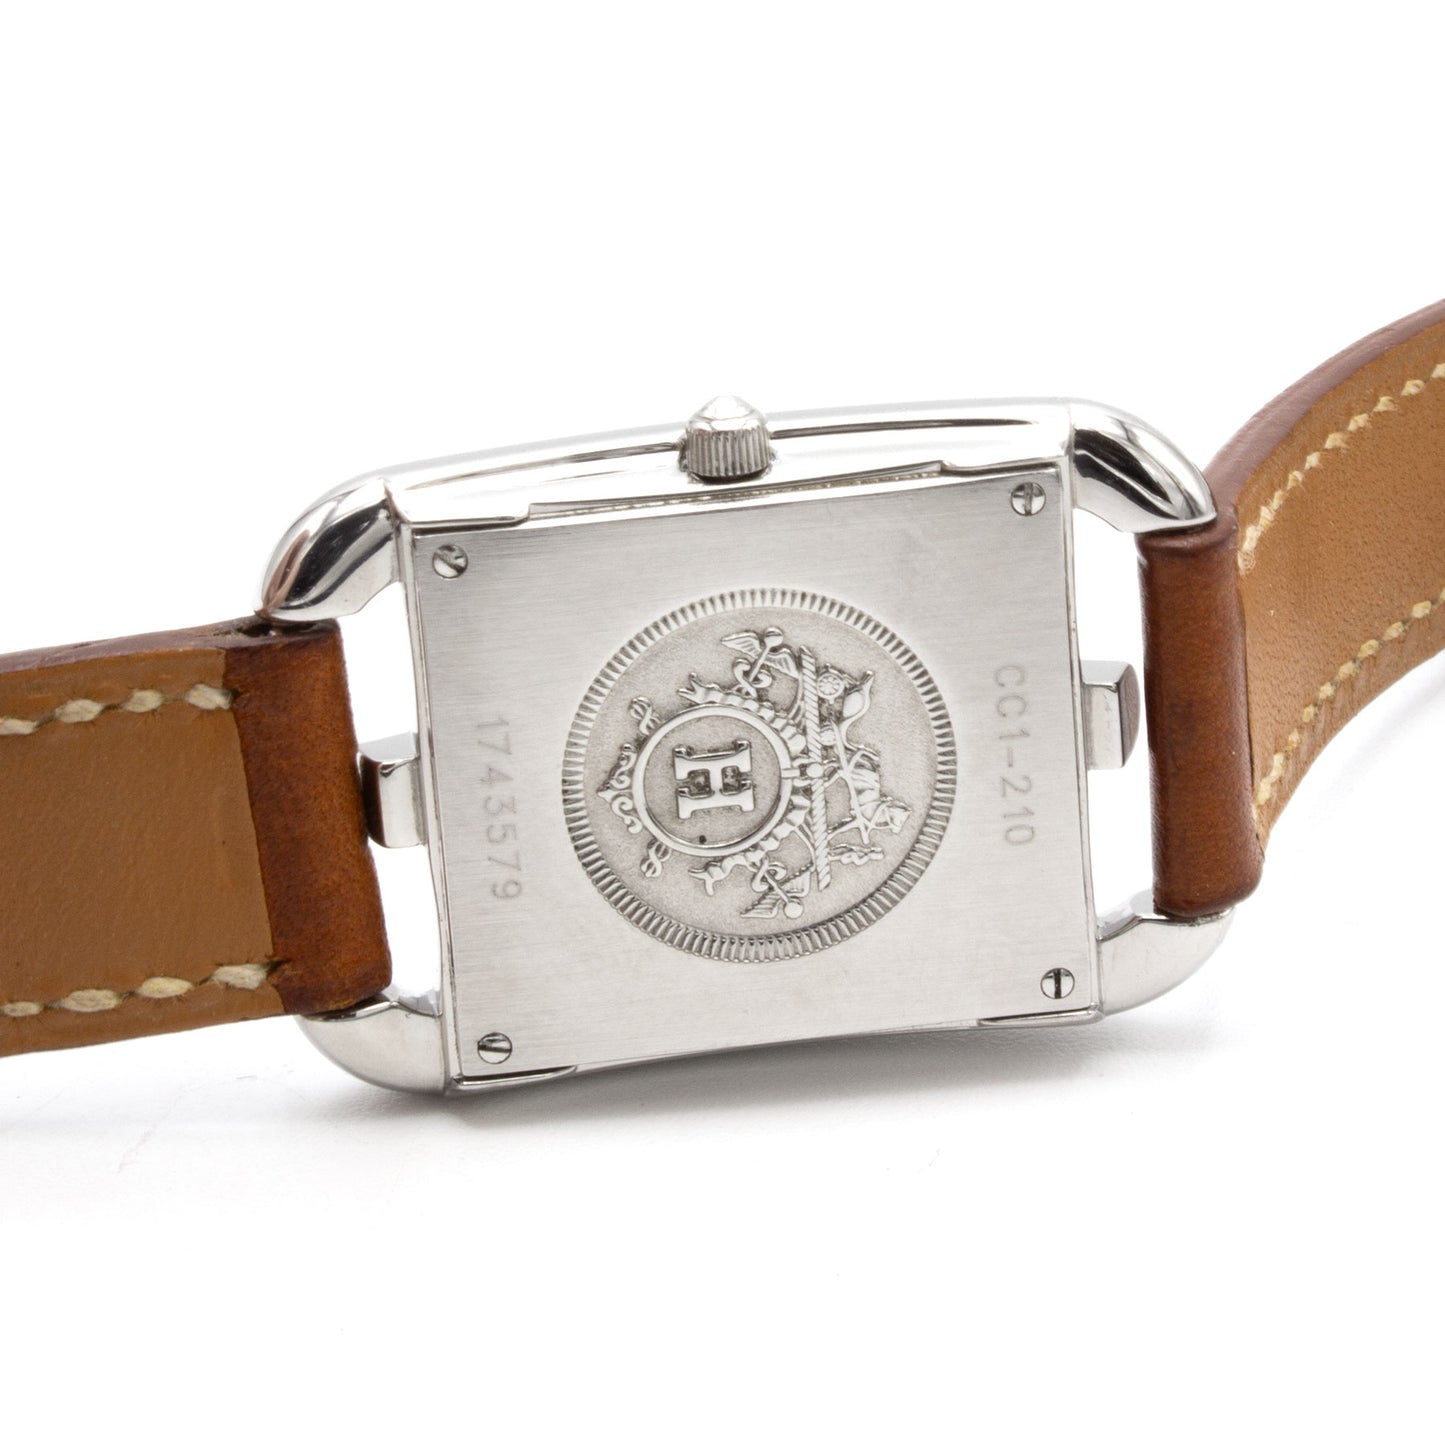 Hermès Cape Cod CC1.210 watch